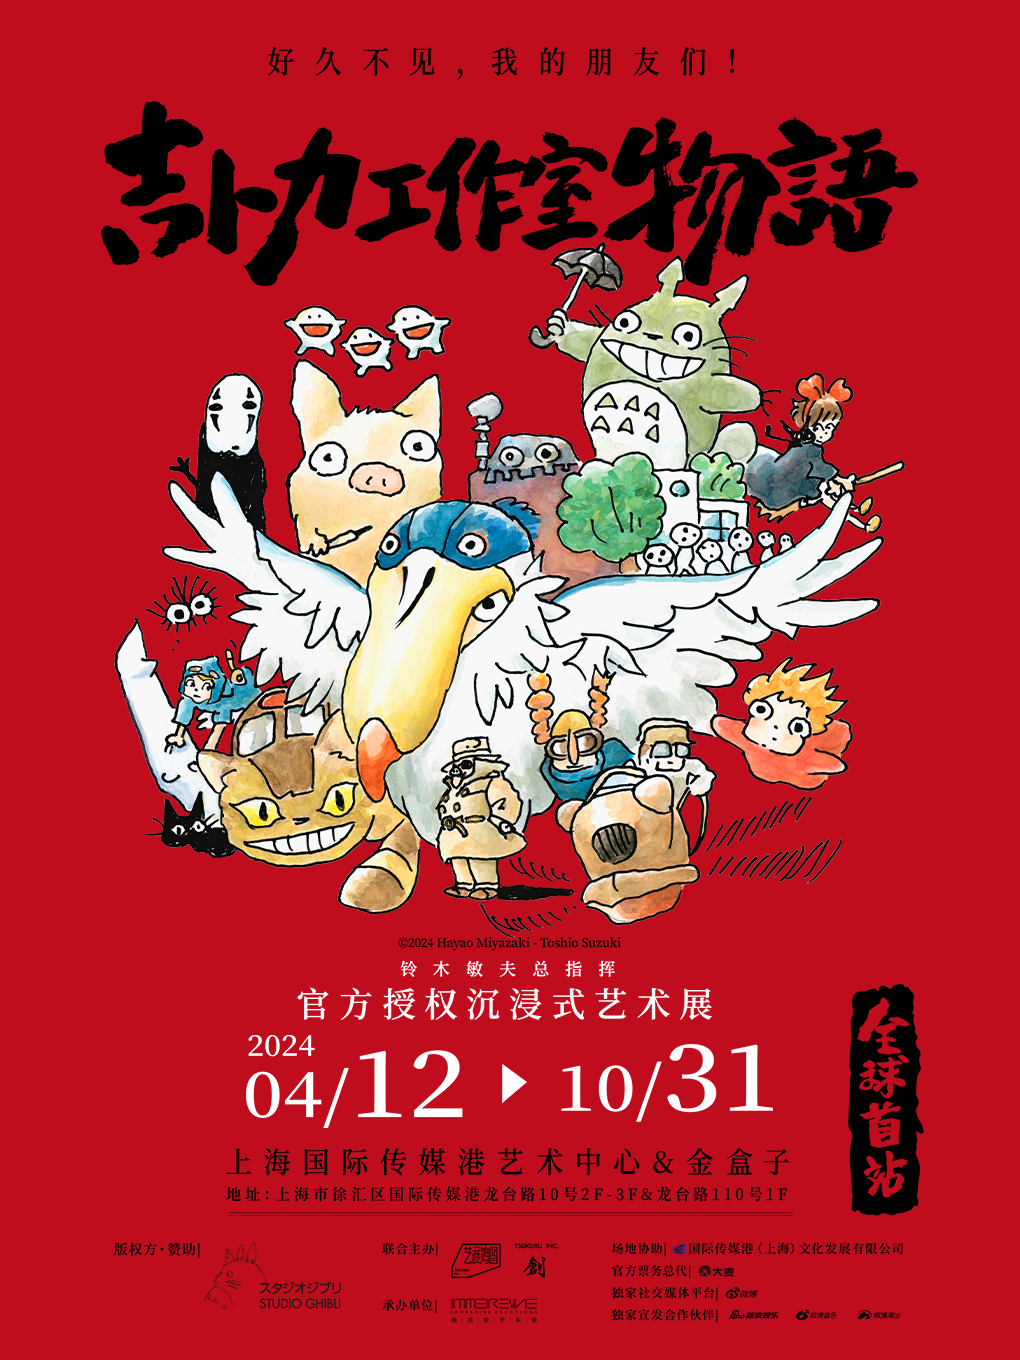 宫崎骏动画世界来了！阿里影业加持，沉浸式艺术展全球首站将落地上海